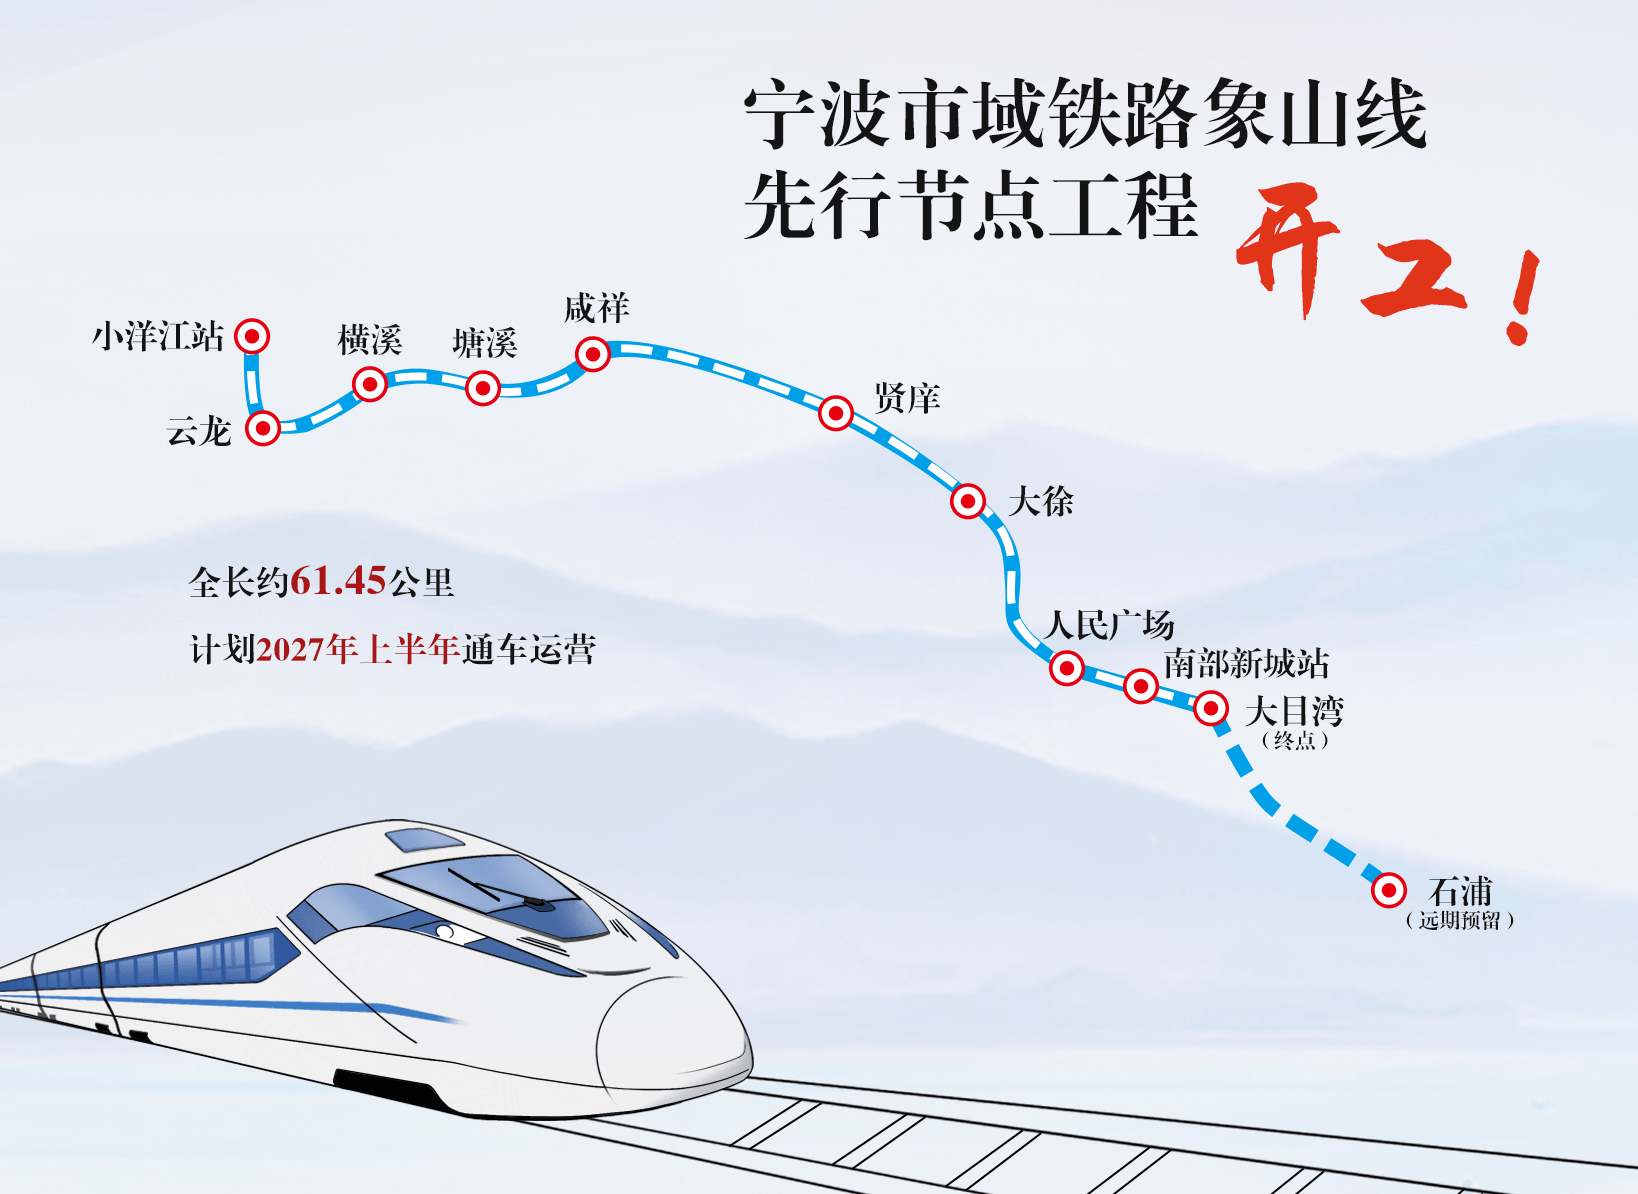 启程宁波市域铁路象山线开工吹响轨交时代的冲锋号角